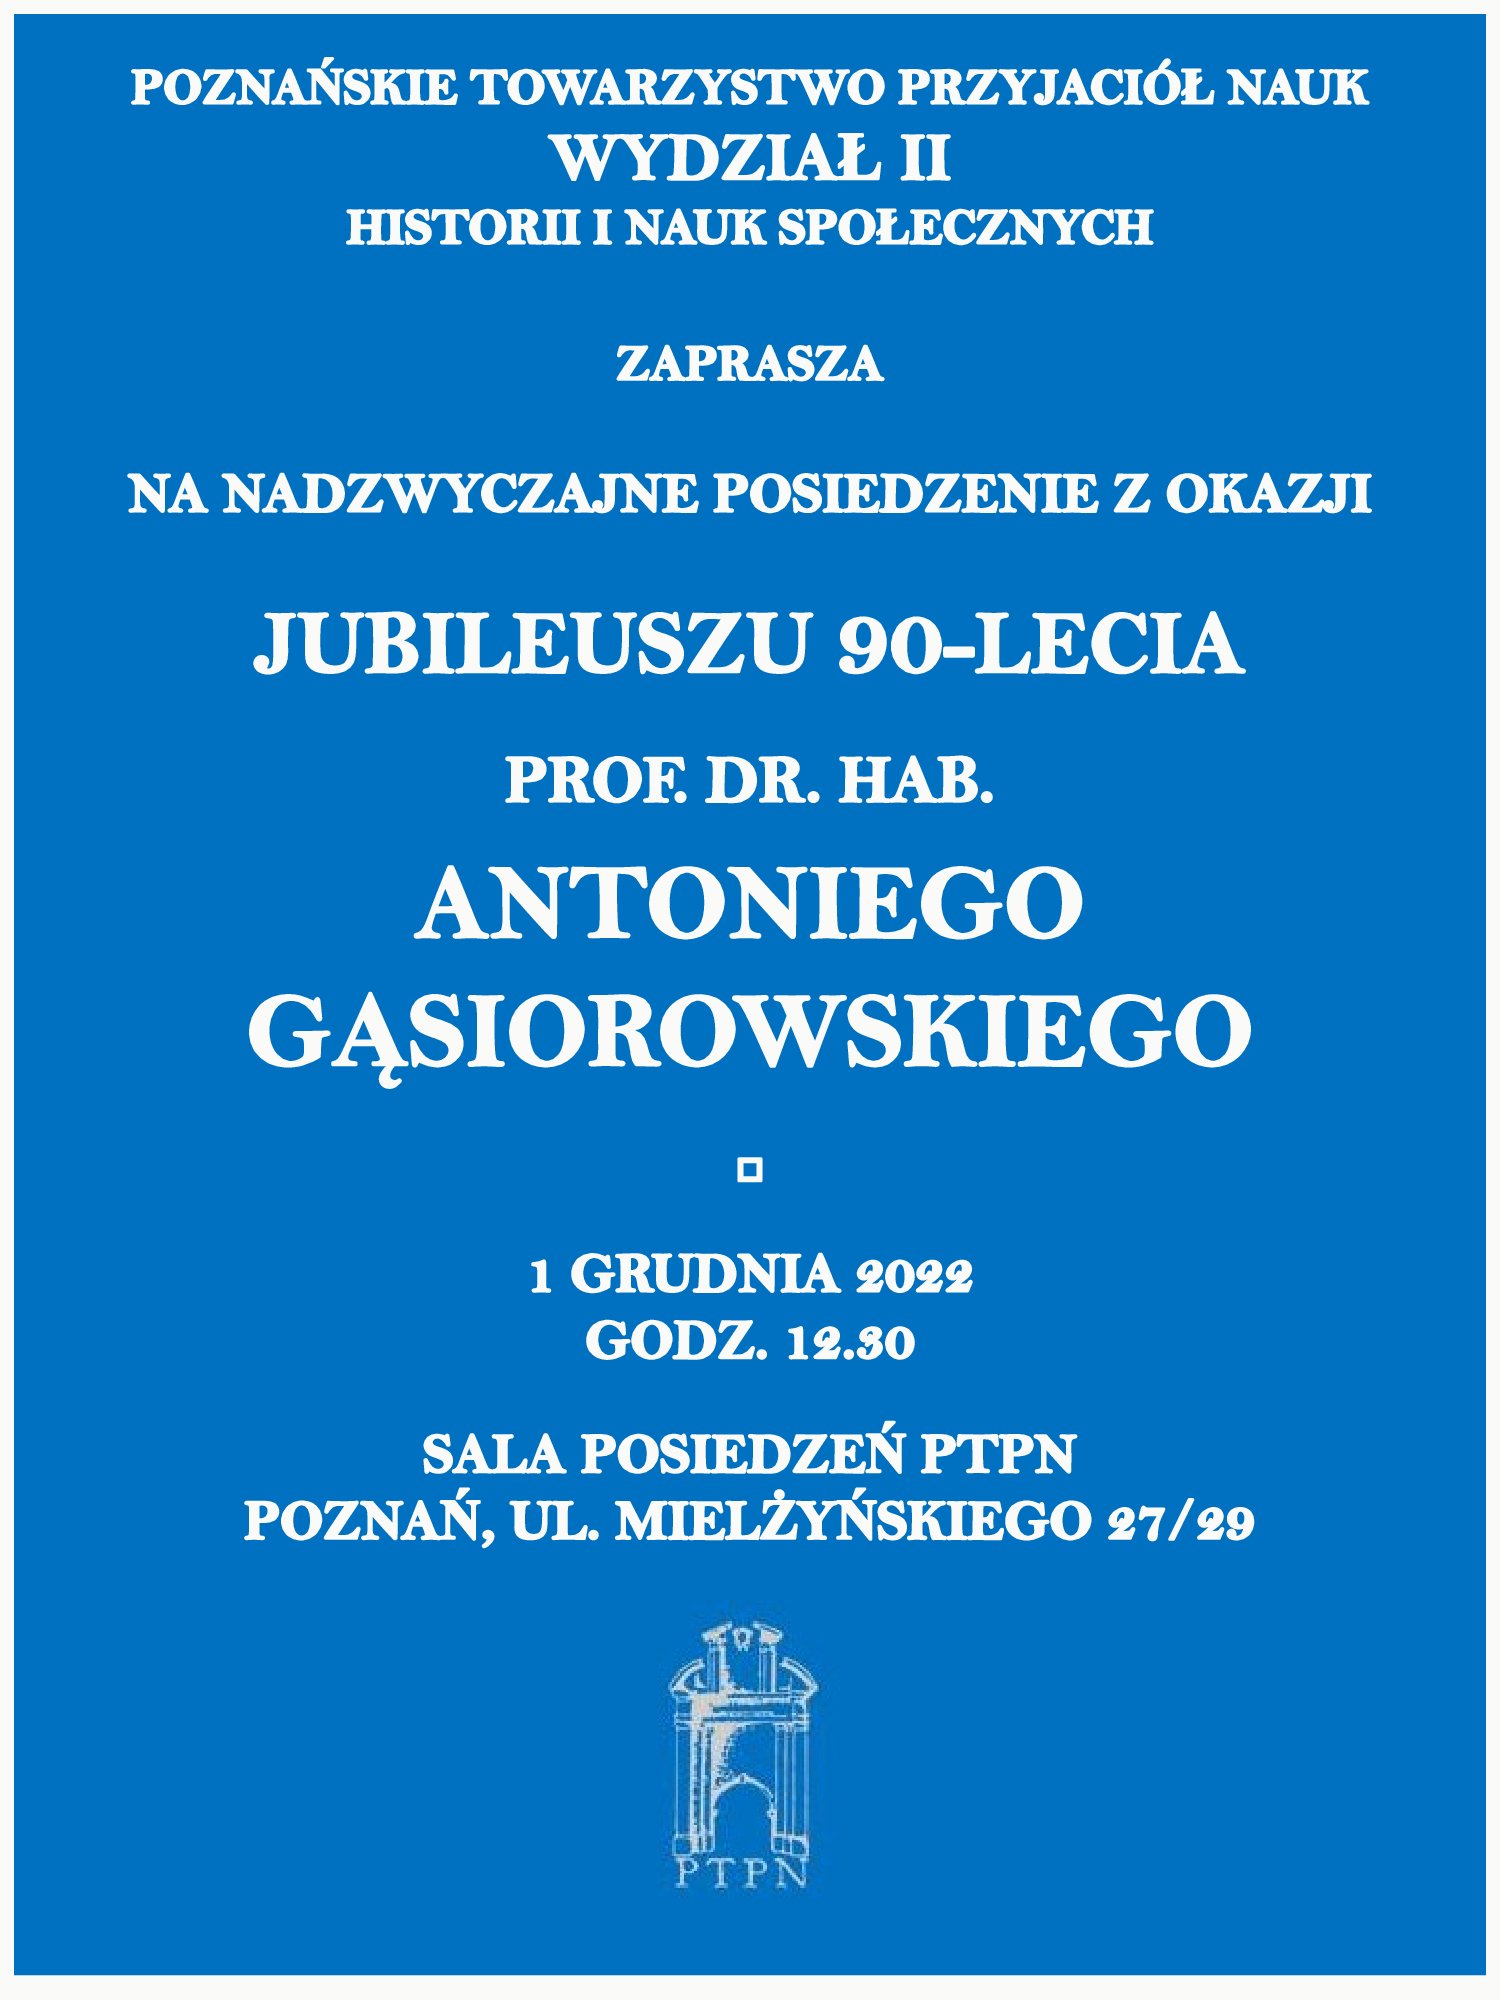 Jubileusz 90-lecia prof. Antoniego Gąsiorowskiego – zaproszenie